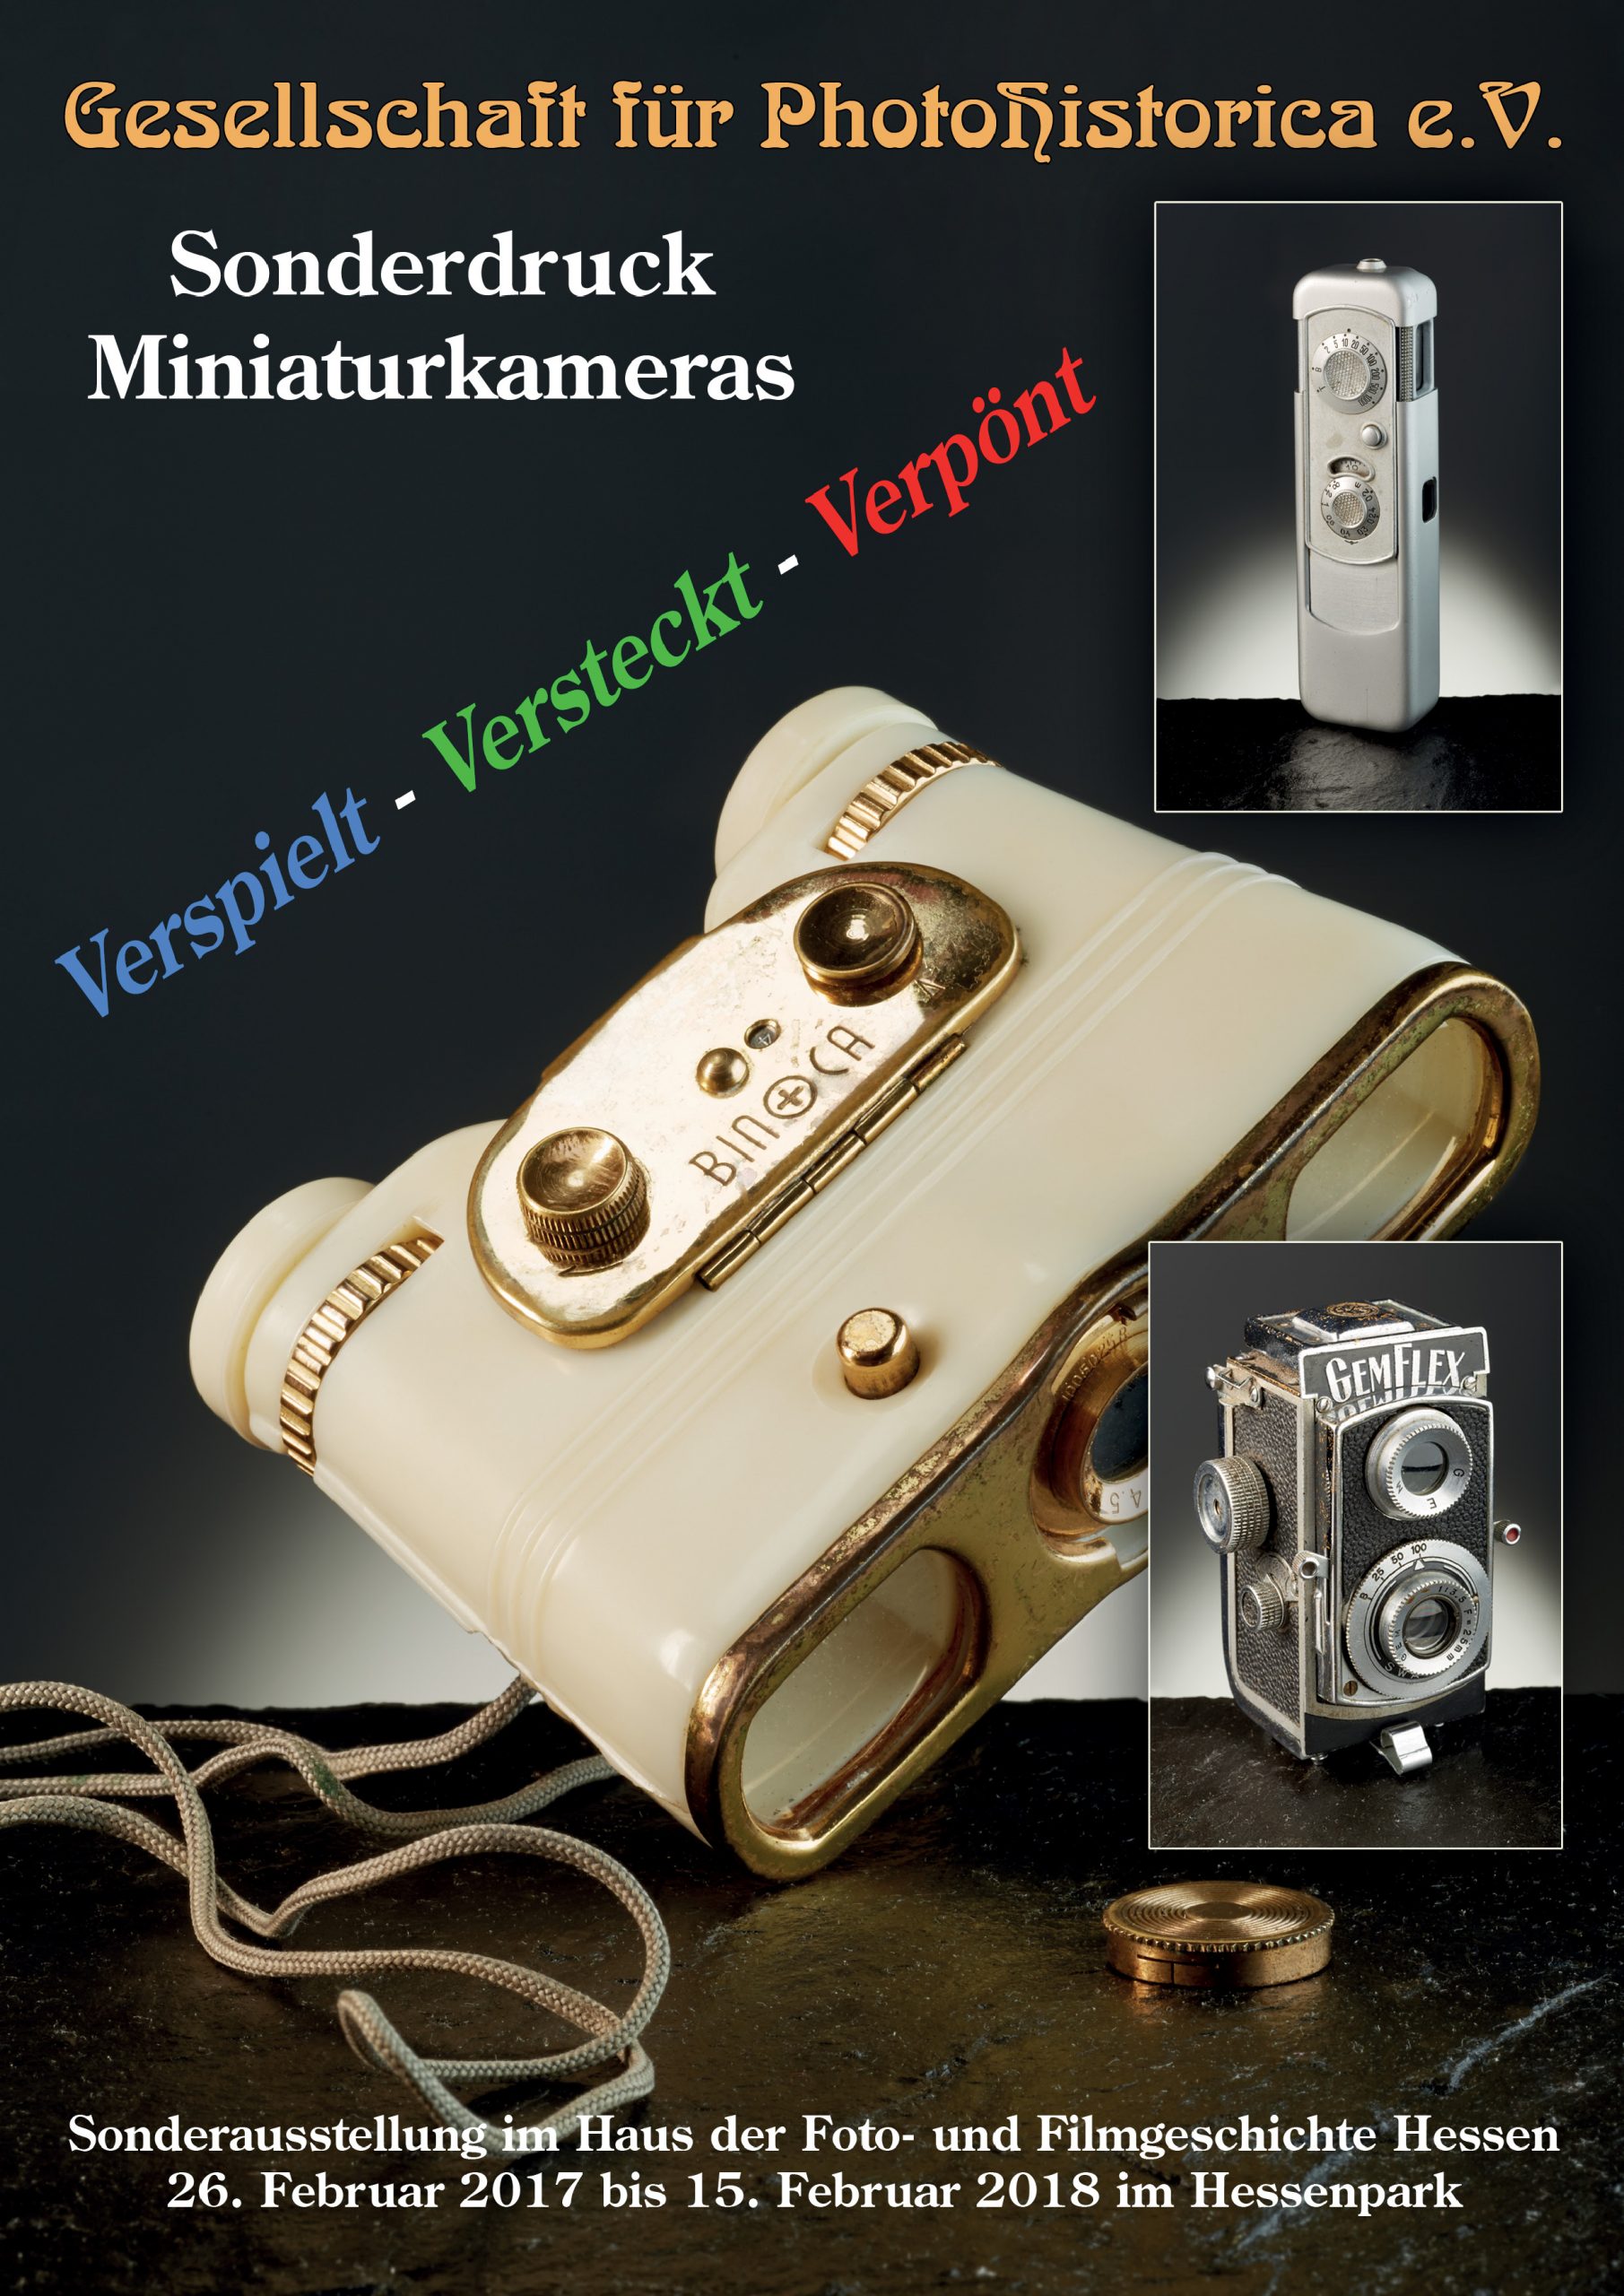 Sonderdruck Miniaturkameras 2017